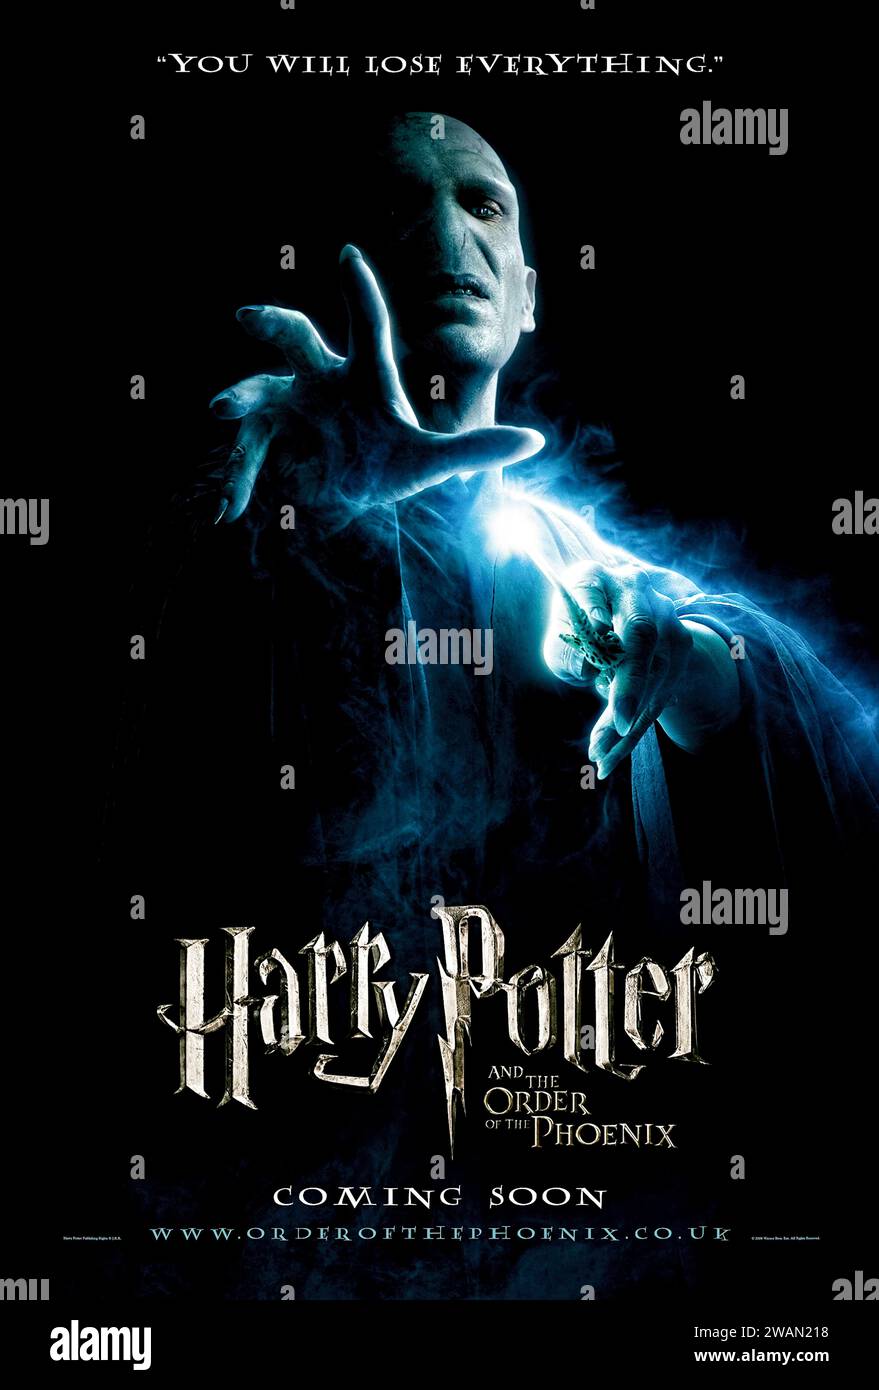 Harry Potter and the Order of the Phoenix (2007), diretto da David Yates e interpretato da Daniel Radcliffe, Emma Watson e Rupert Grint. Con il loro avvertimento sul ritorno di Lord Voldemort flagellato, Harry e Silente sono presi di mira dalle autorità del Mago mentre un burocrate autoritario prende lentamente il potere a Hogwarts. Fotografia di un poster originale del 2007. ***SOLO USO EDITORIALE*** credito: BFA / Warner Bros Foto Stock